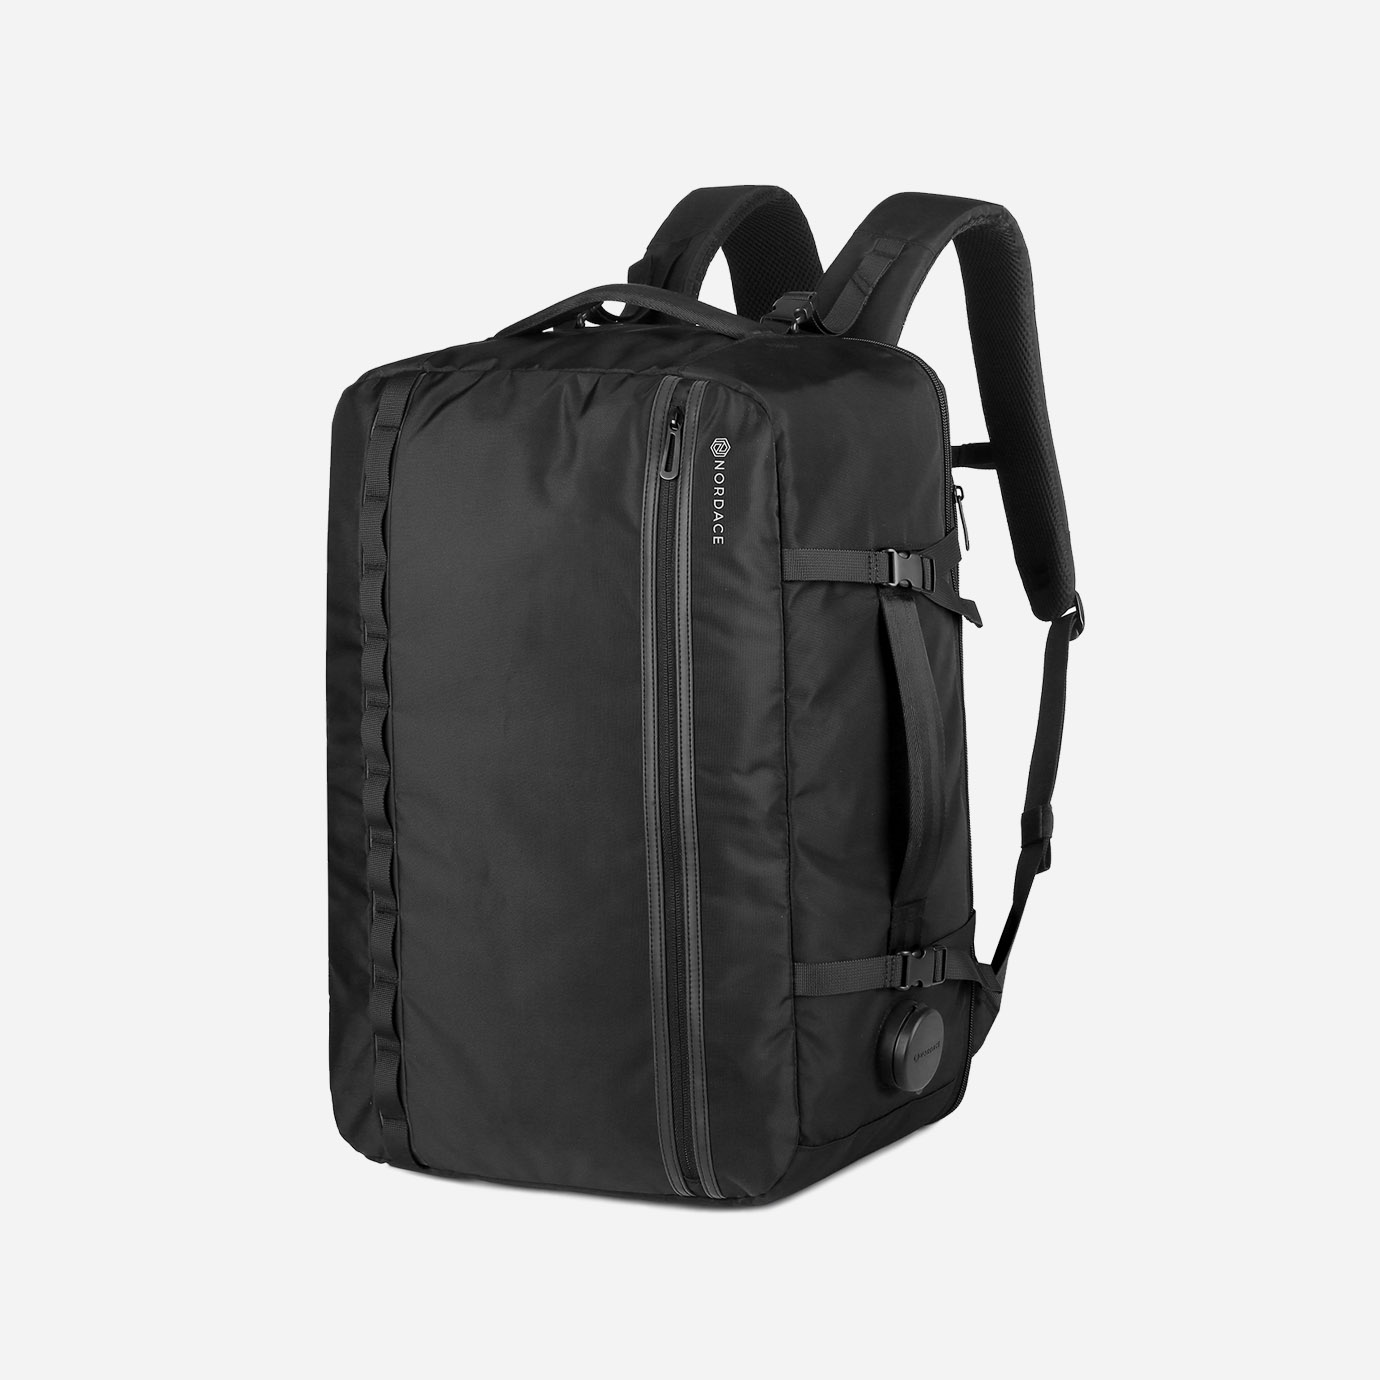 Nordace Nelson - Smart Travel Backpack  Rucksackreisen, Rucksack, Rucksack  packen